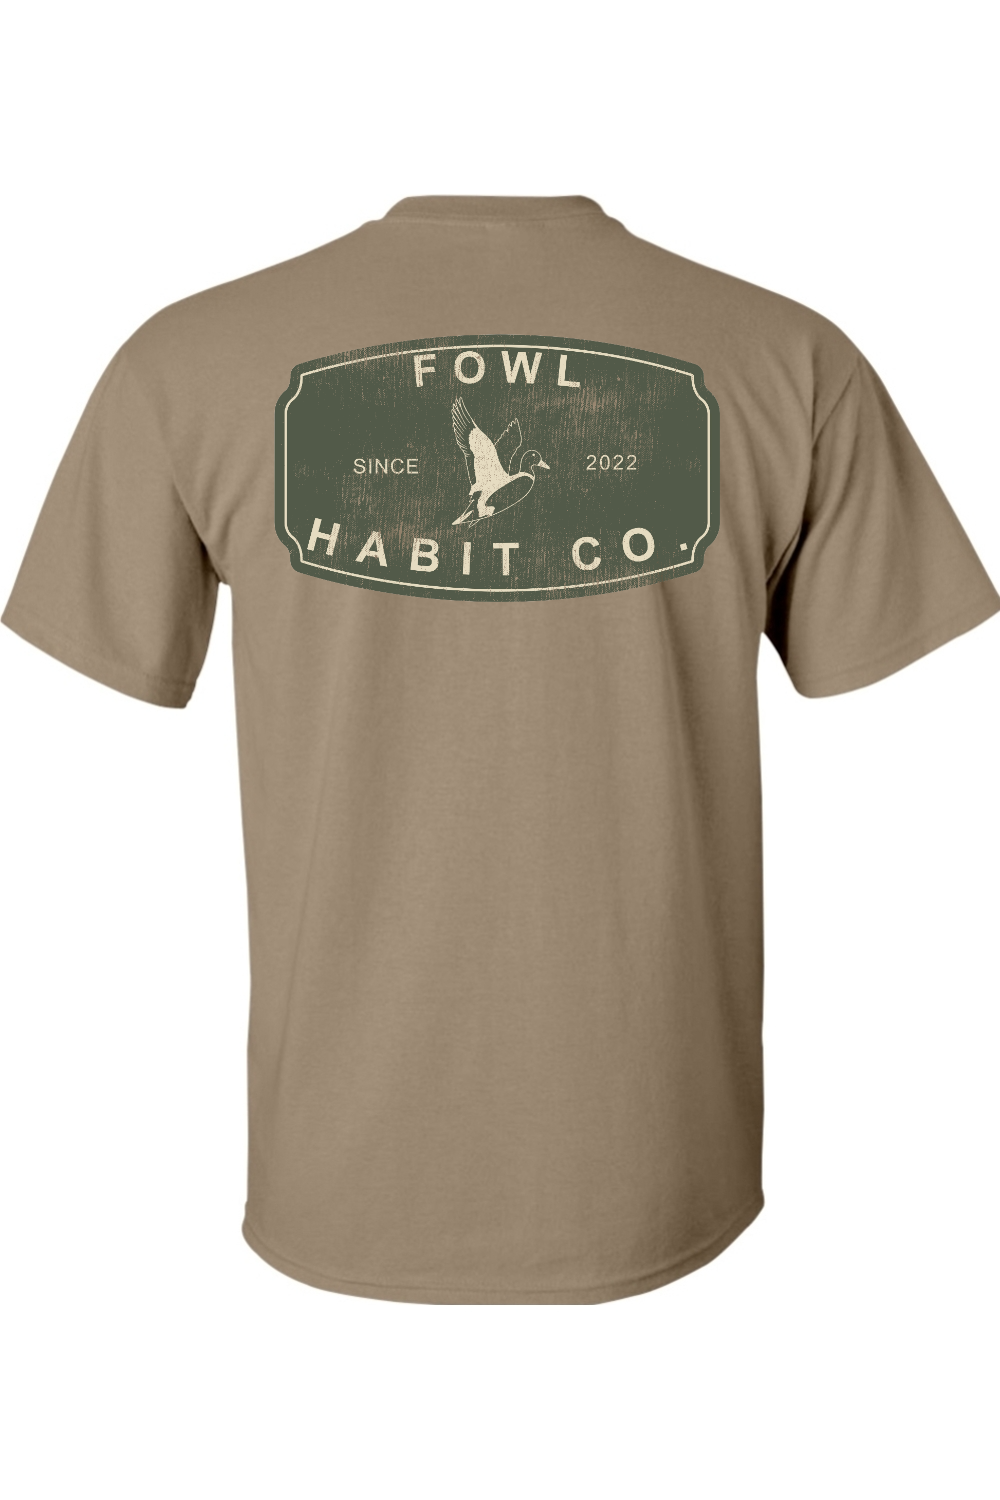 Antique T-Shirt - Fowl Habit Co.